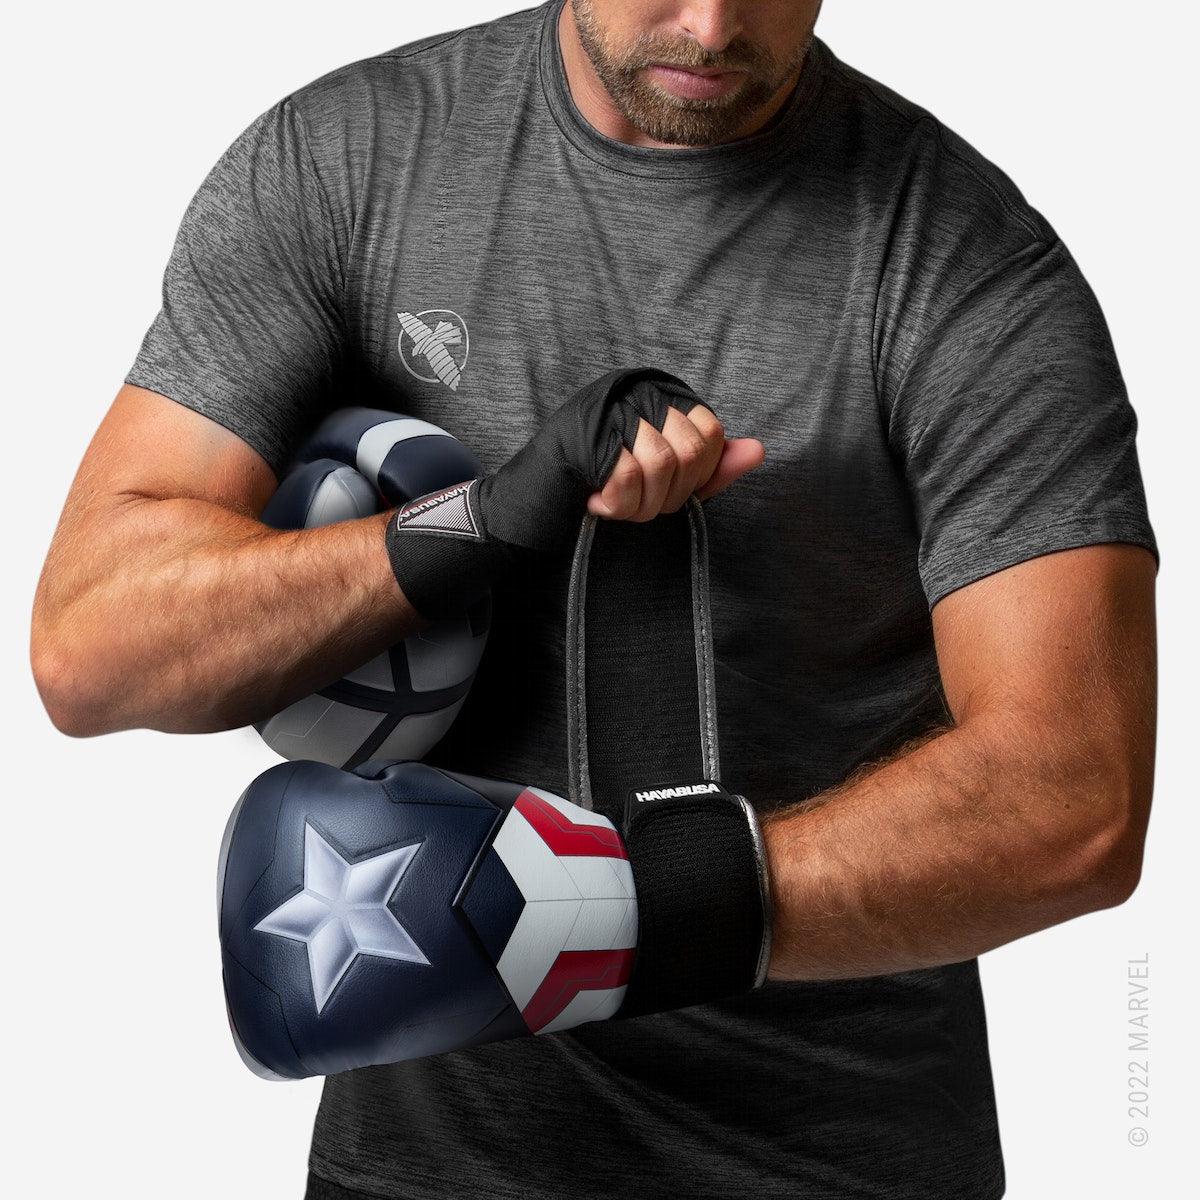 Marvels Captain America (Sam Wilson) Boxing Gloves - Violent Art Shop